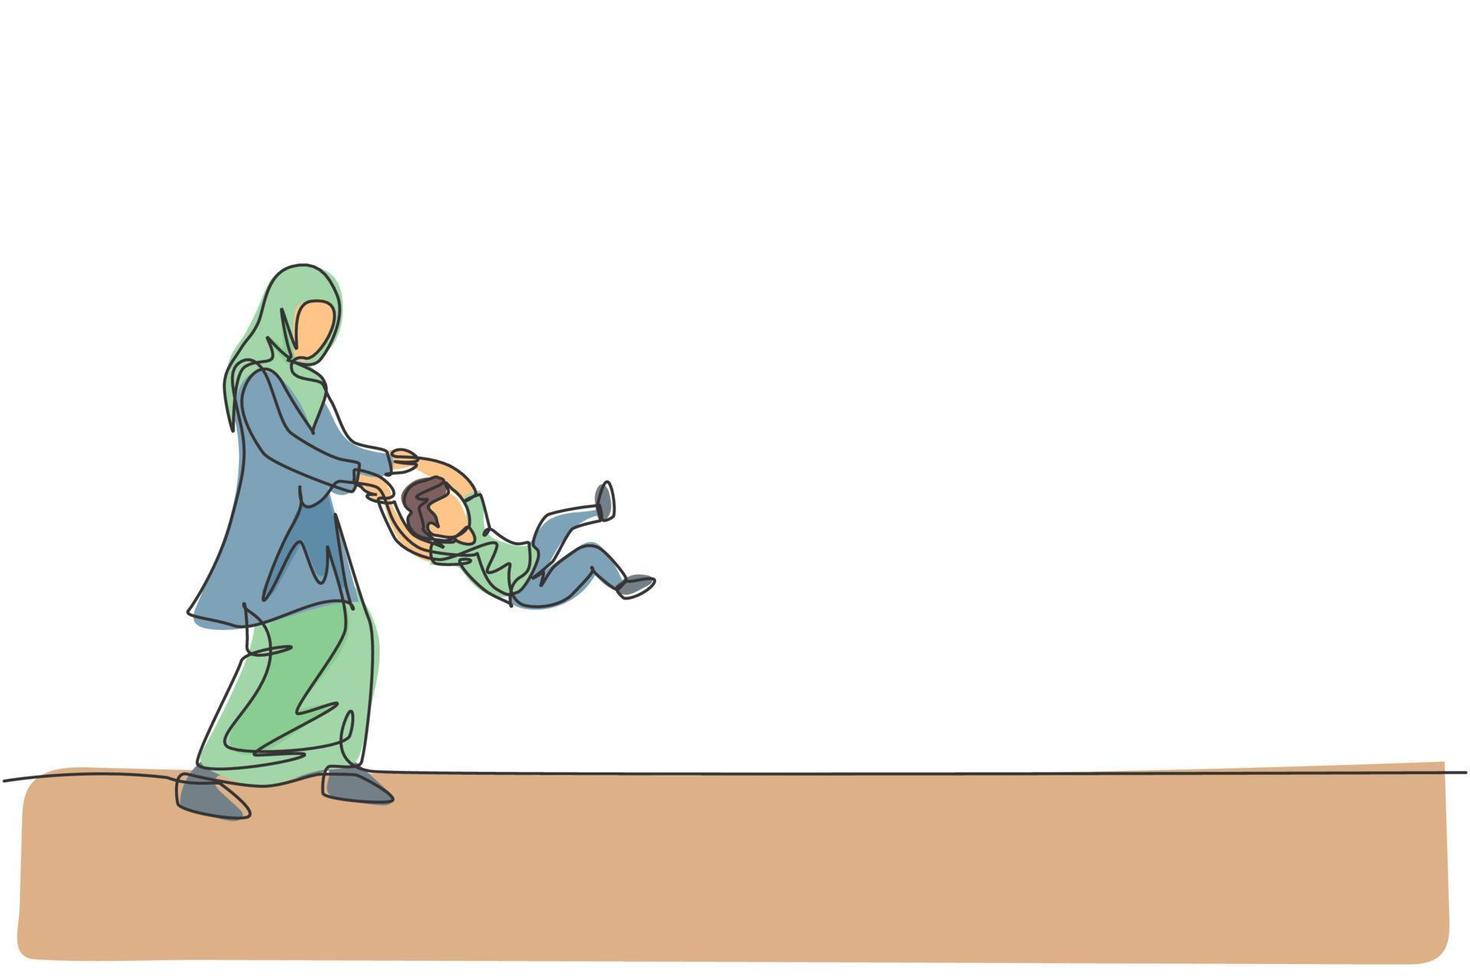 enda kontinuerlig linje ritning av ung islamisk mamma lek och sväng hennes son pojke upp i luften hemma, lyckligt föräldraskap. arabiska familjeomsorg koncept. trendig en linje rita design vektor illustration